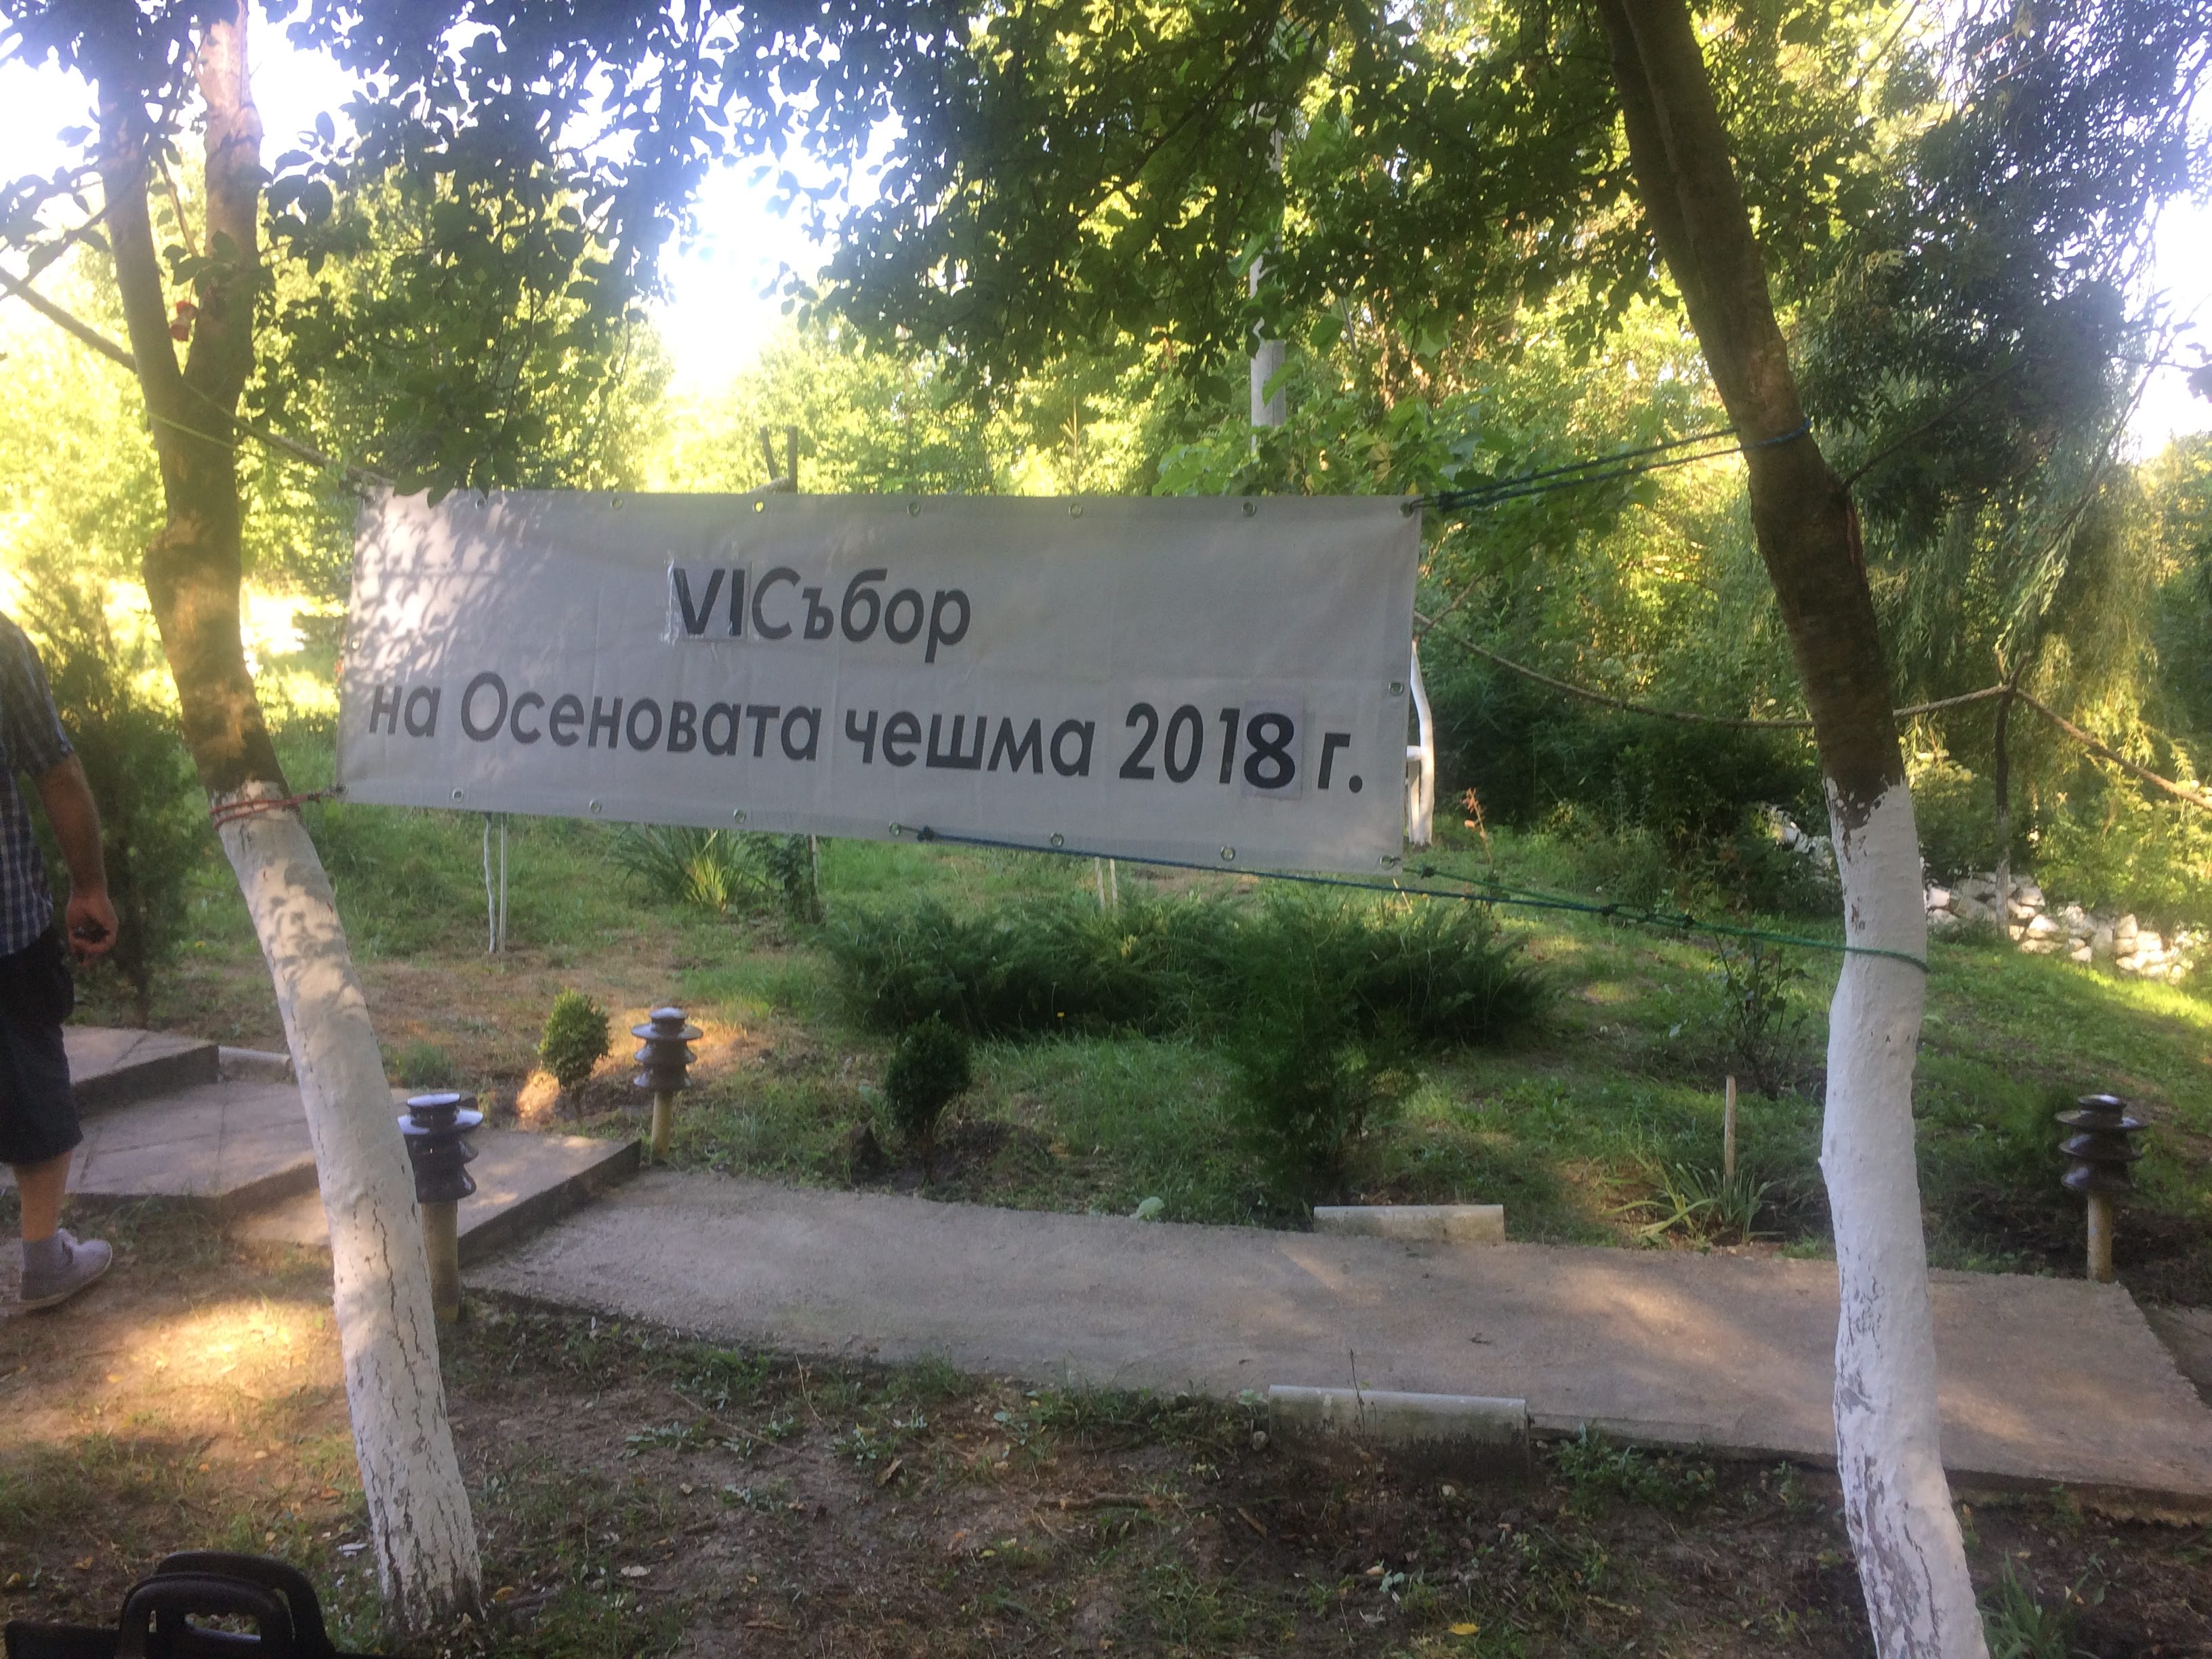 VI-ти Събор на Осеновата чешма – 18.08.2018г.